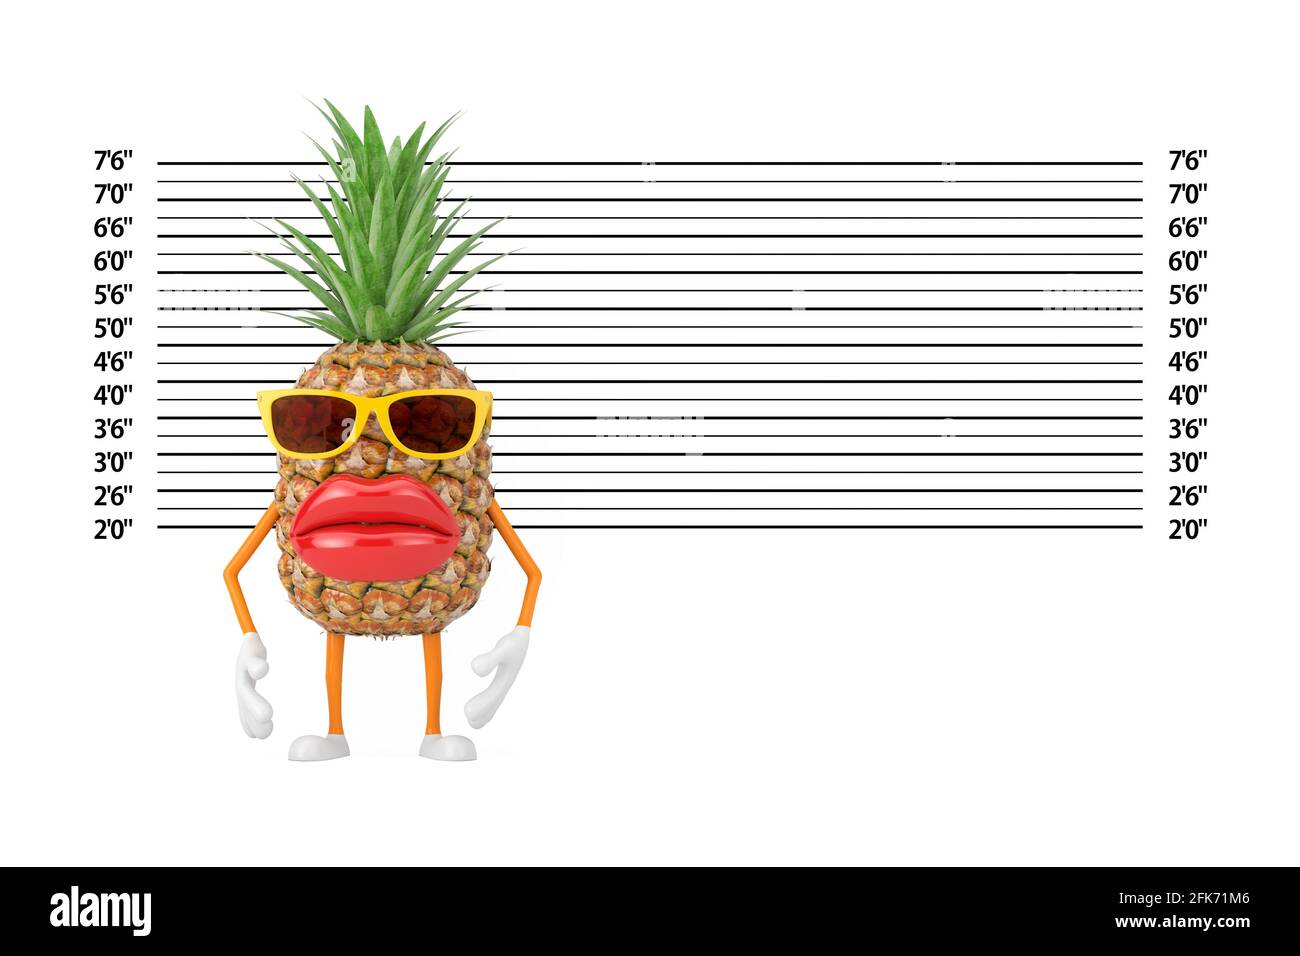 Fun dessin animé mode Hipster Cut Pineapple personne personnage Mascot en face de police ligne ou Mugshot arrière-plan extrême gros plan. Rendu 3d Banque D'Images